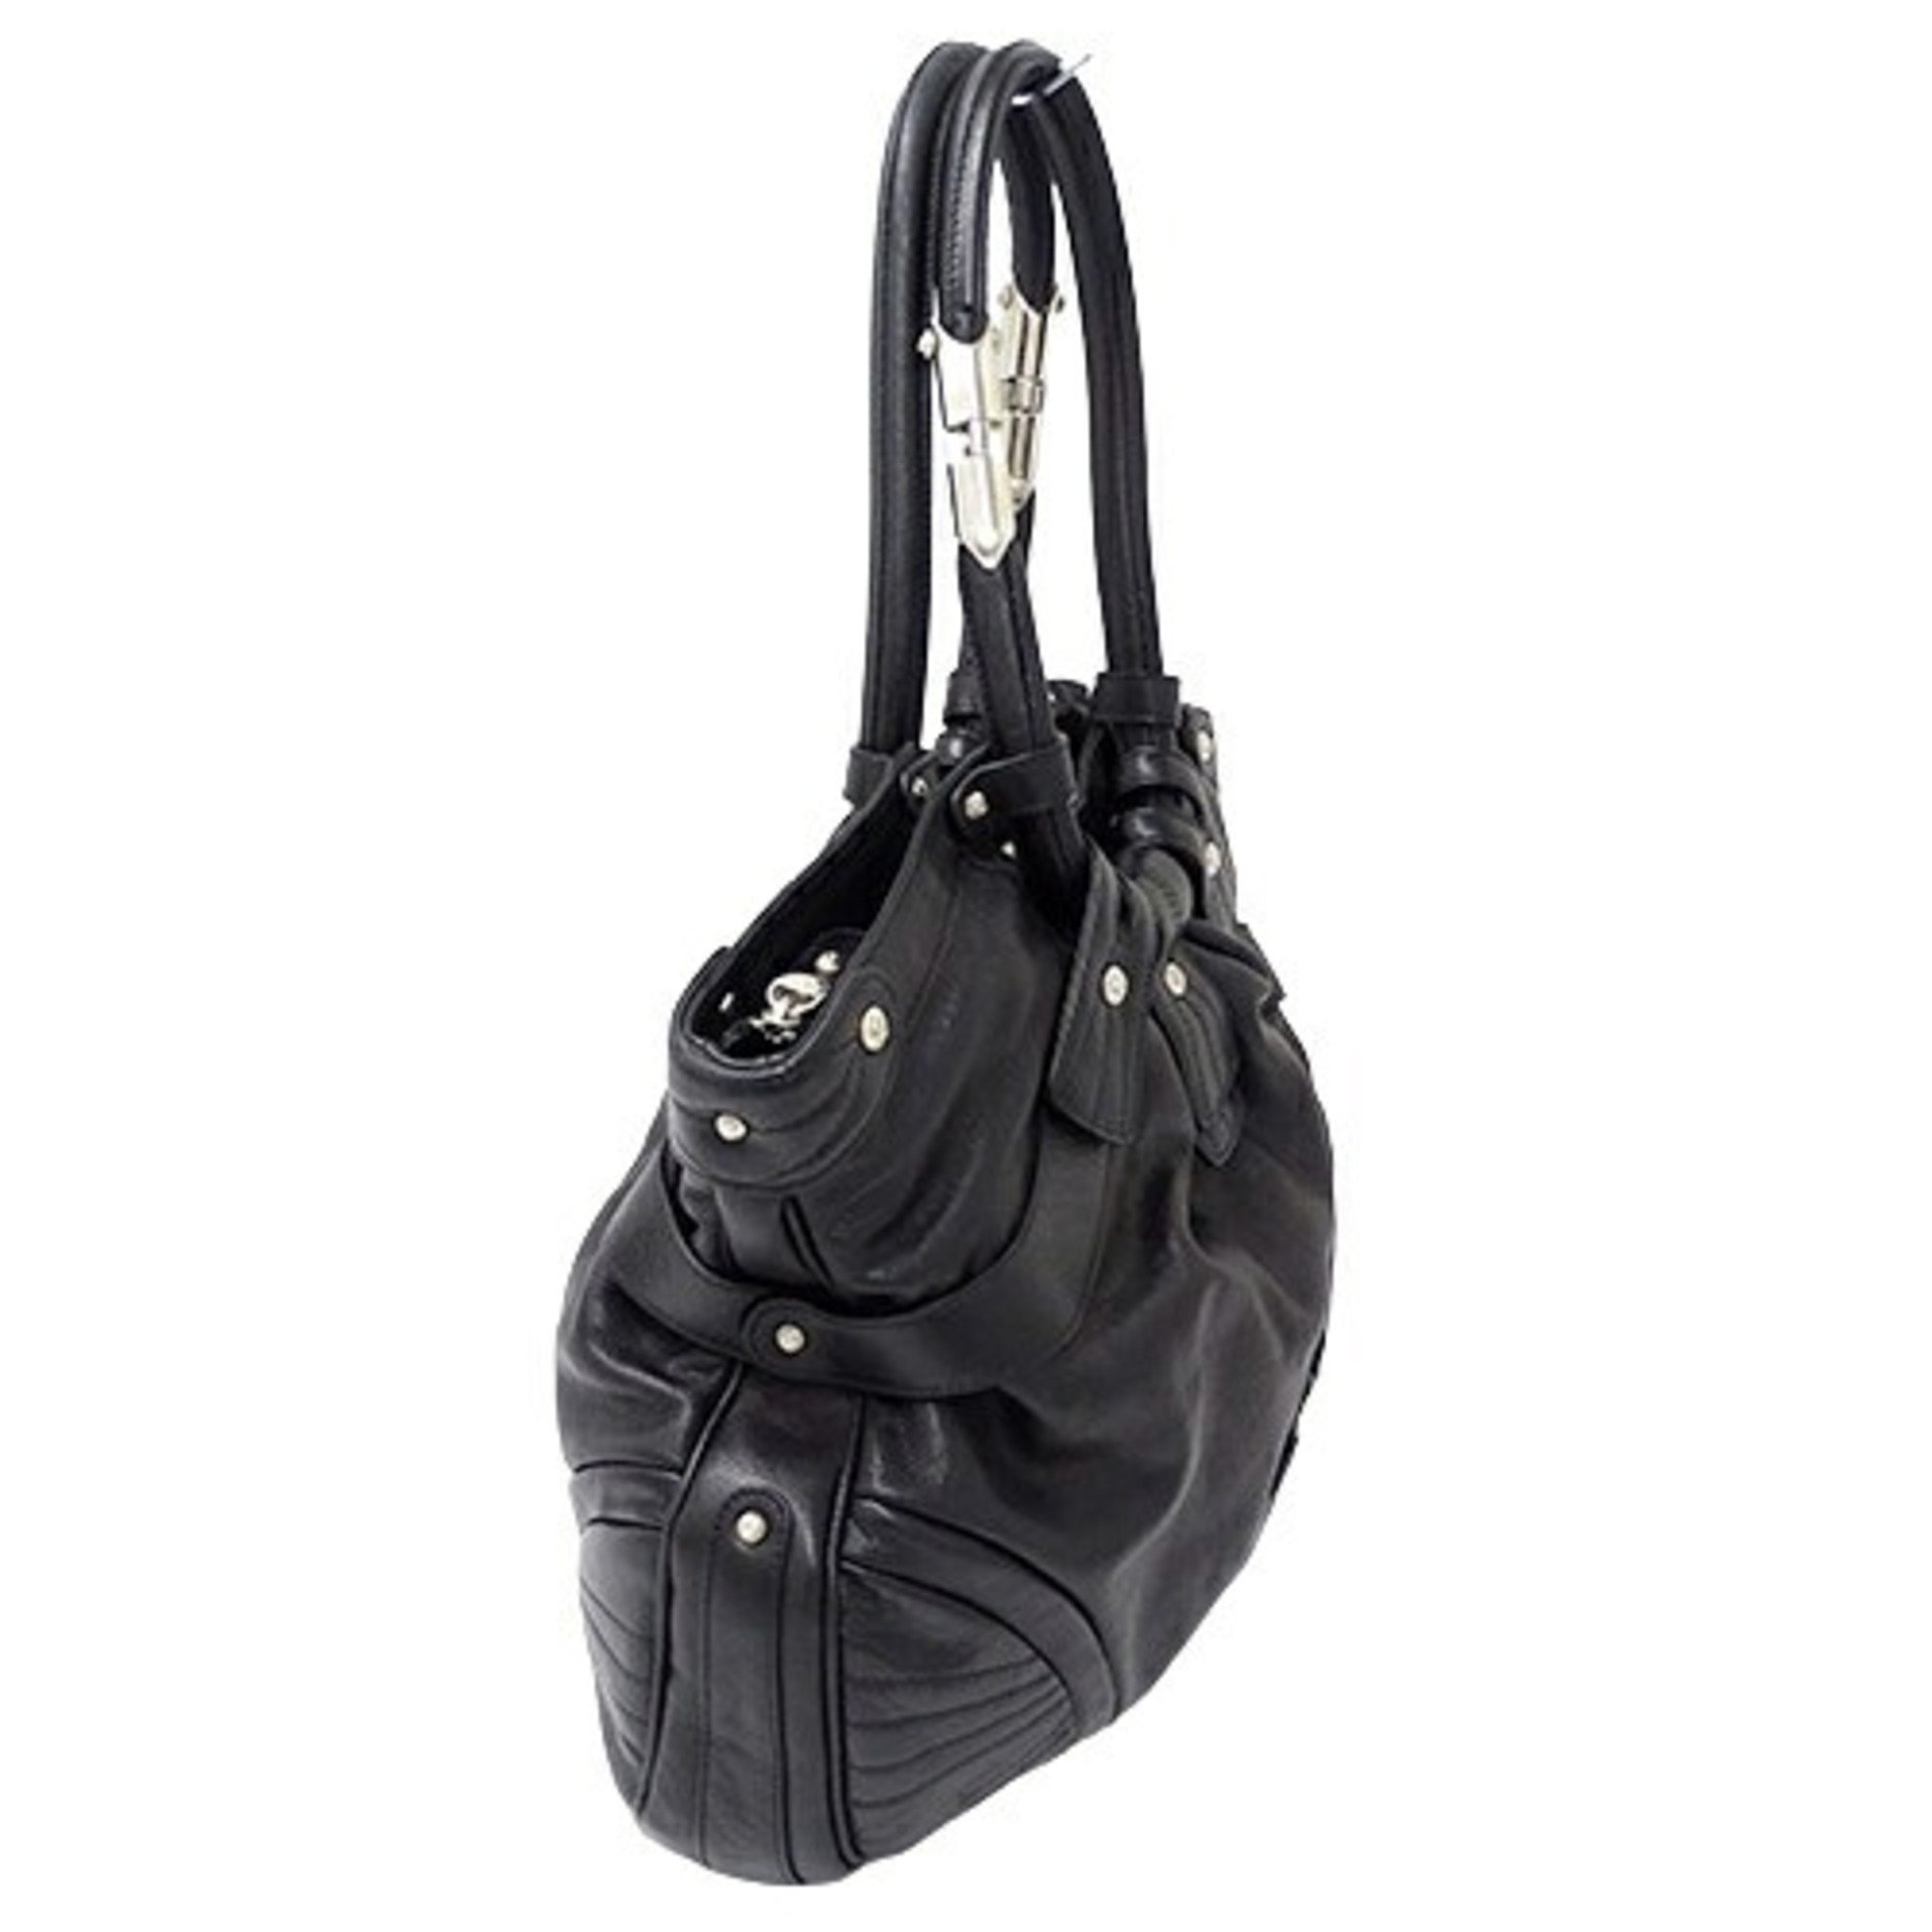 Salvatore Ferragamo Ferragamo Women's Tote Bag Gancini Leather Black